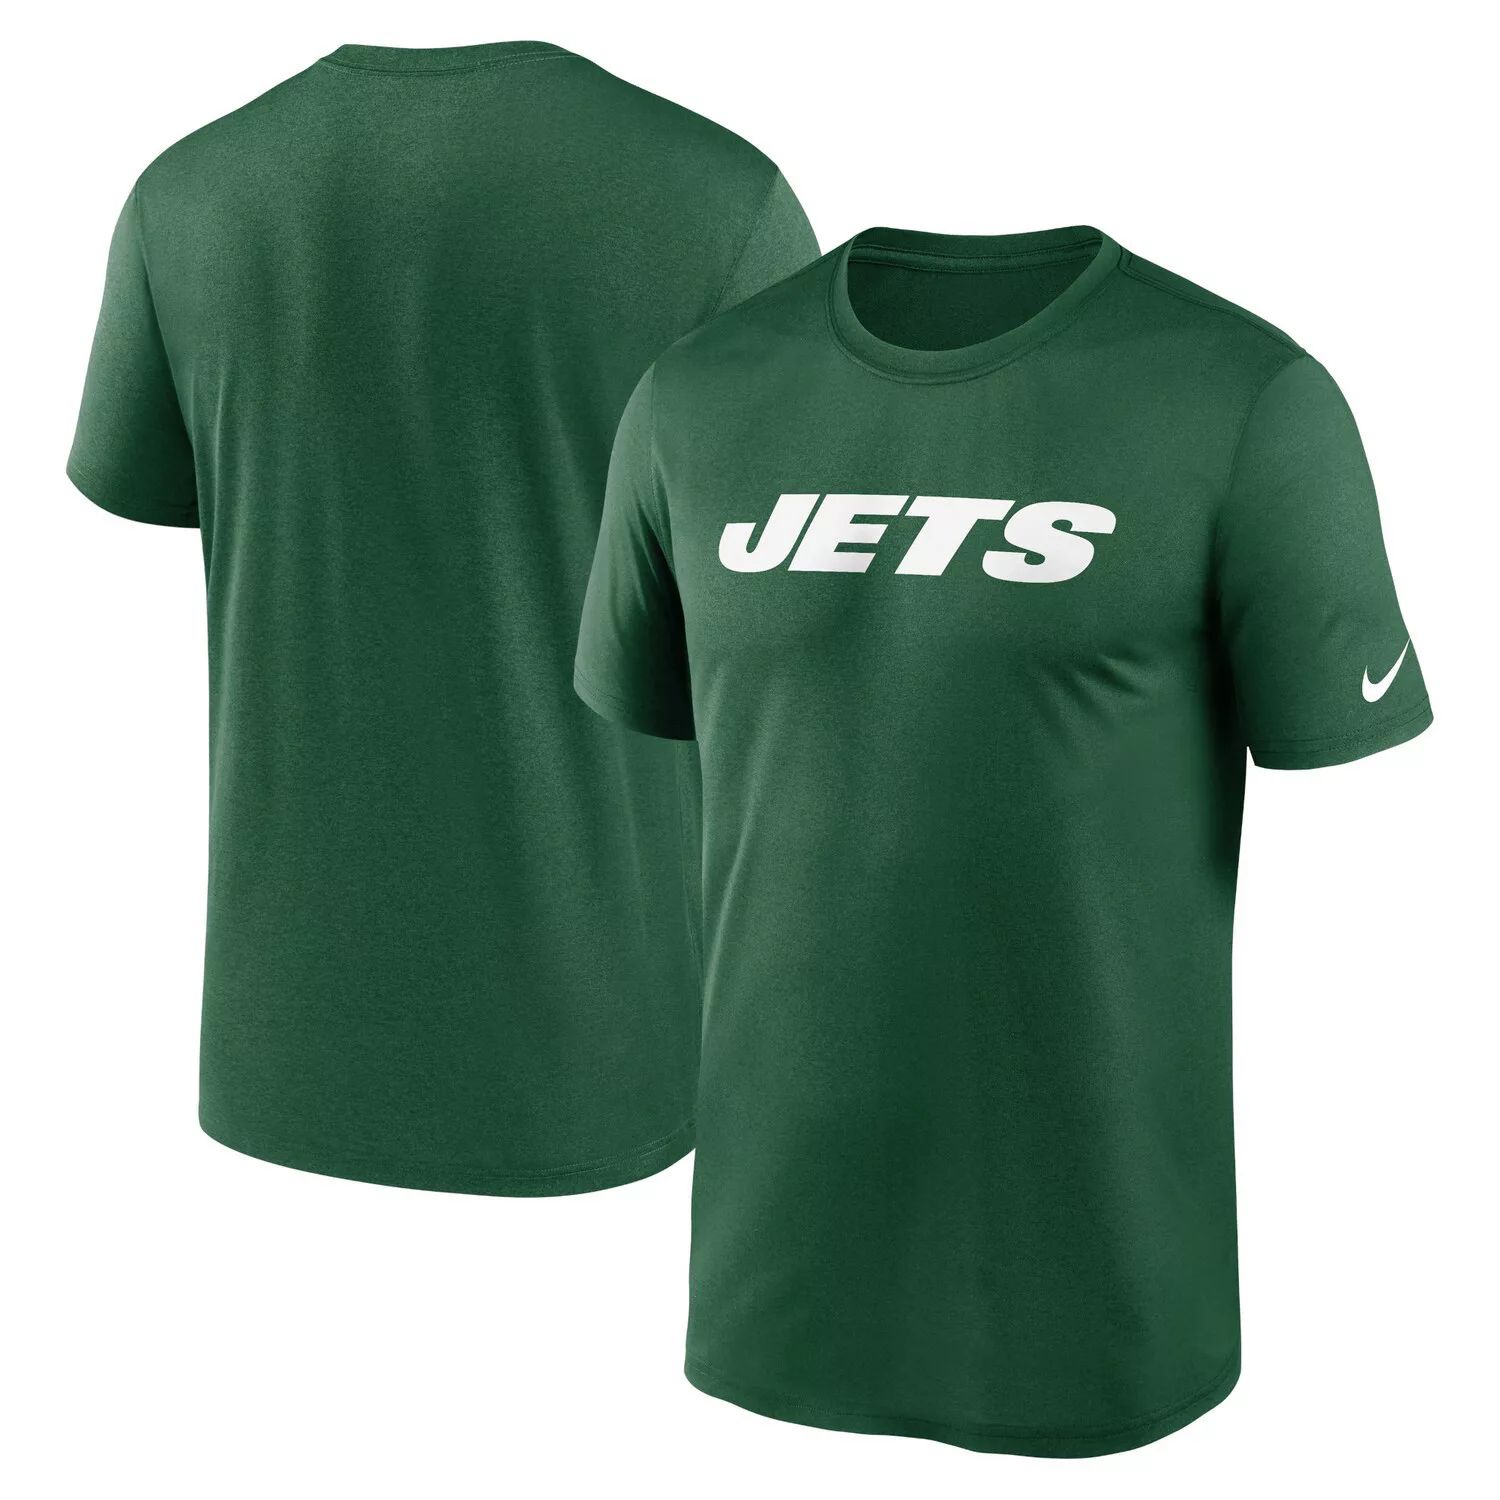 Мужская зеленая футболка New York Jets Legend с надписью Performance Nike мужская зеленая футболка new york jets legend icon performance nike